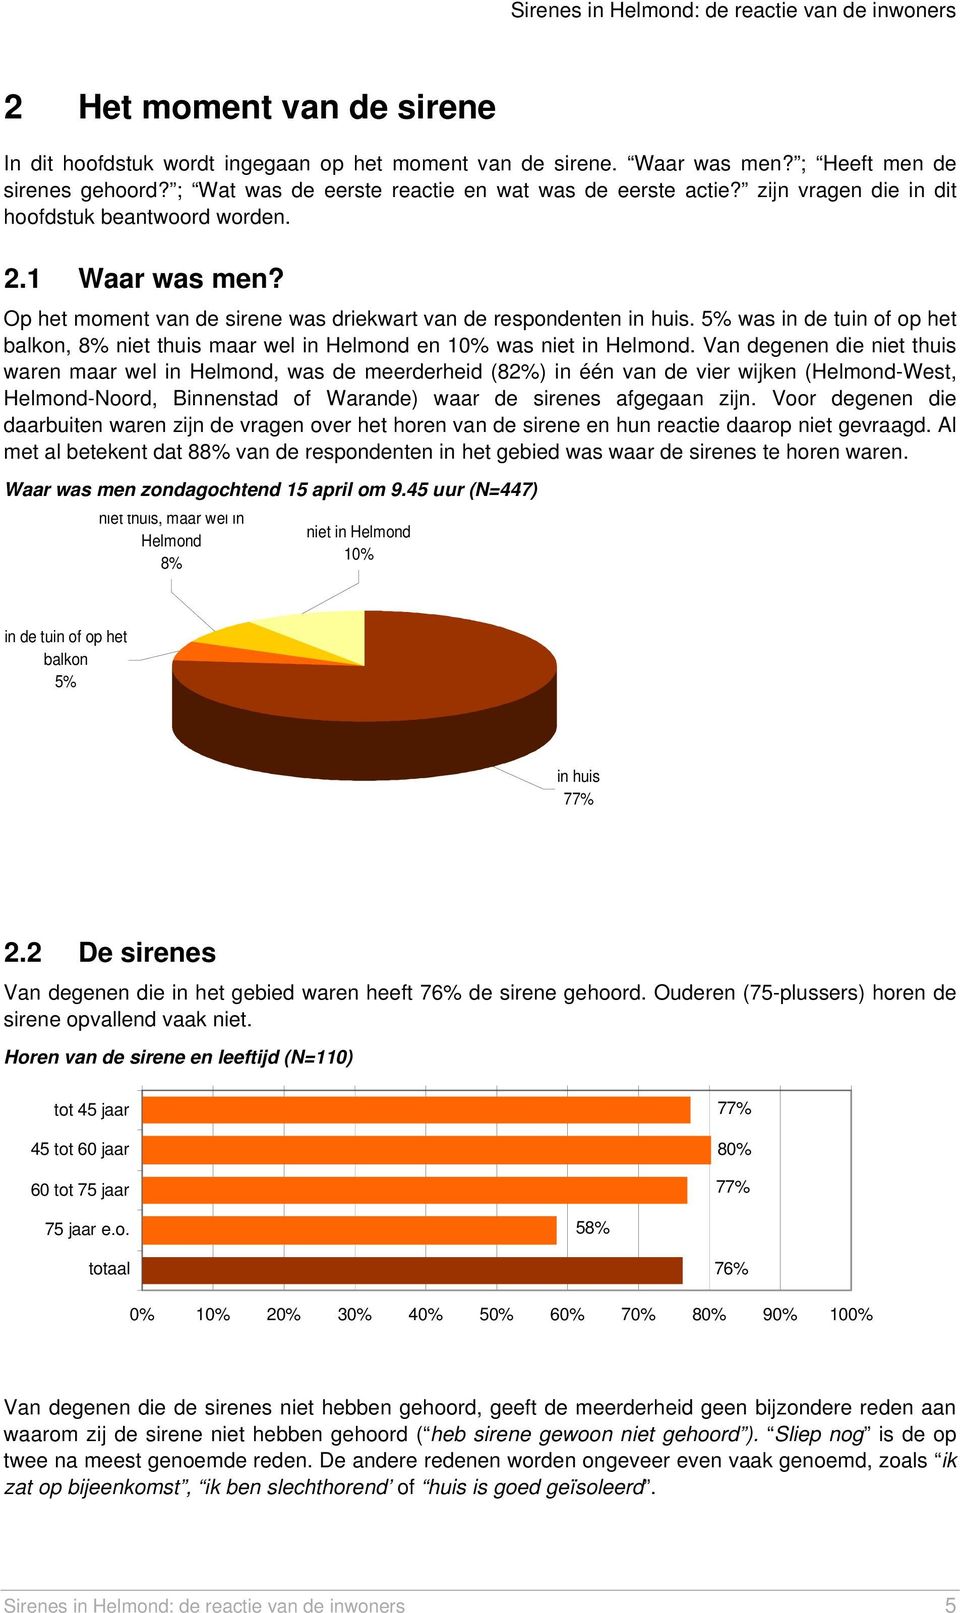 5% was in de tuin of op het balkon, 8% niet thuis maar wel in Helmond en 10% was niet in Helmond.